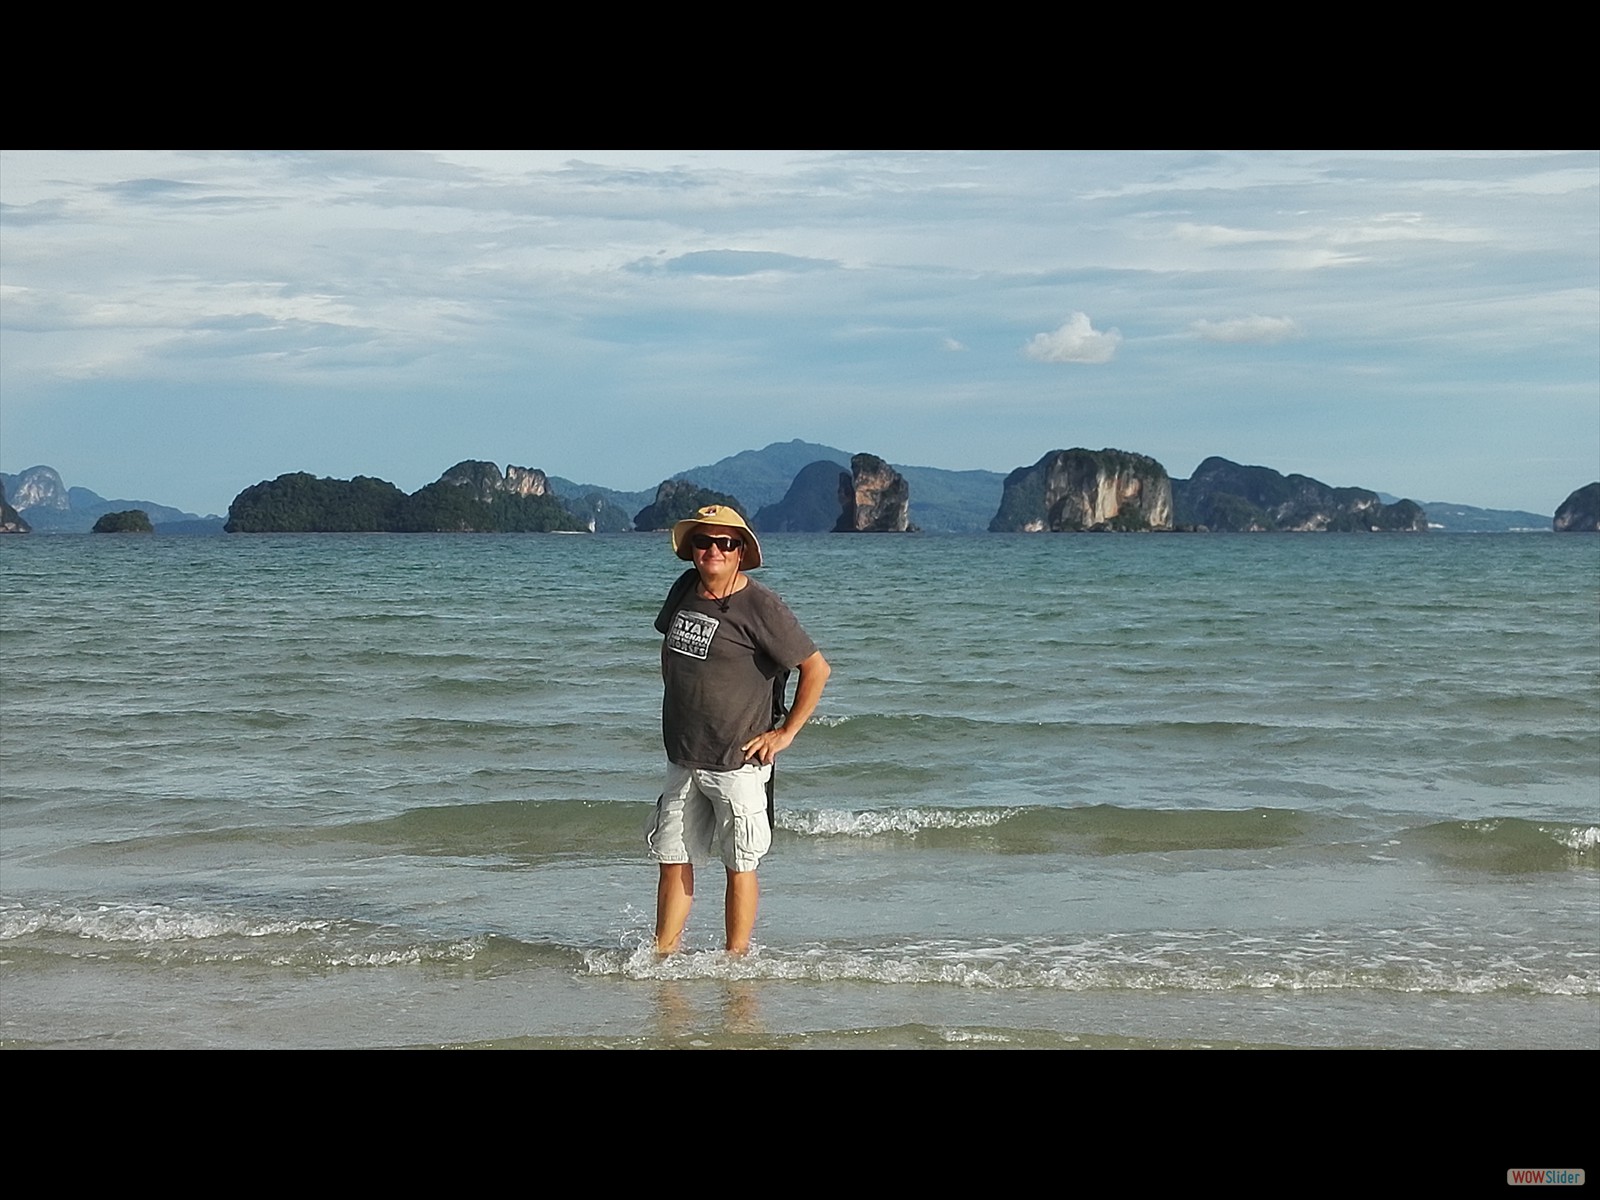 Décembre: Thaïlande - île de Koh Yao Noï